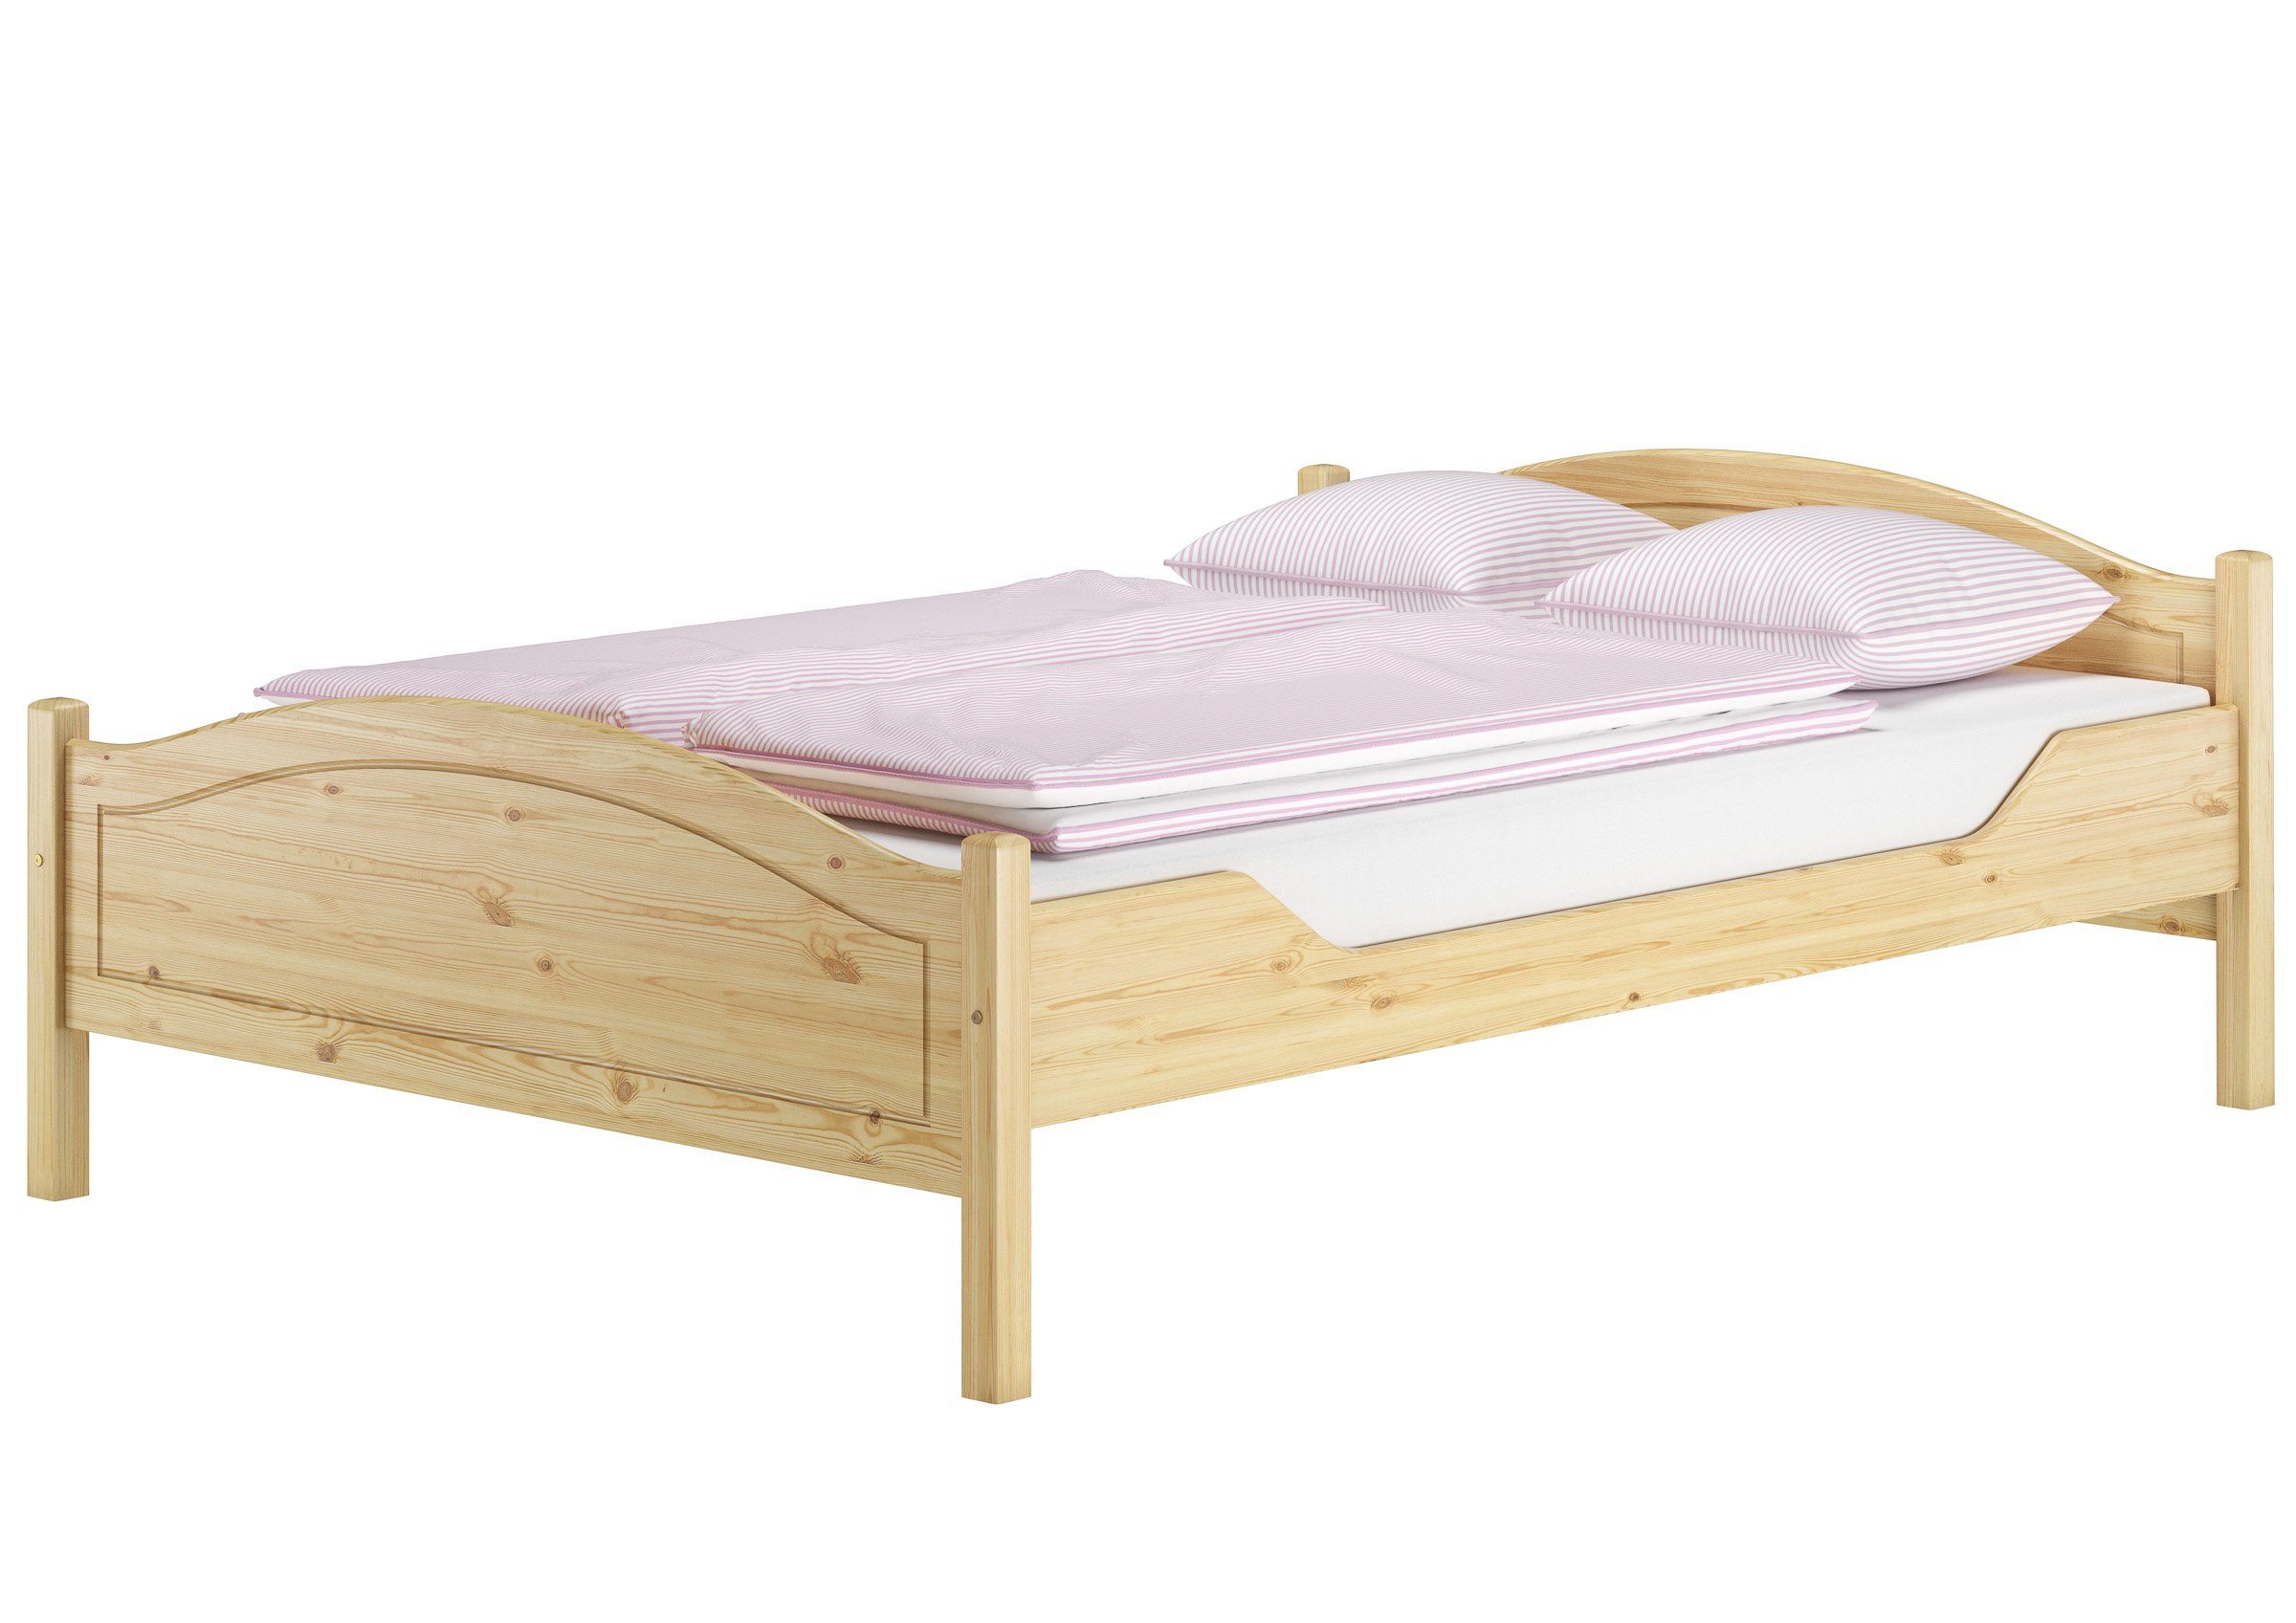 ERST-HOLZ Bett Doppelbett Bett Landhausstil Kiefer massiv 140x200 Zubehör wählbar, Kieferfarblos lackiert